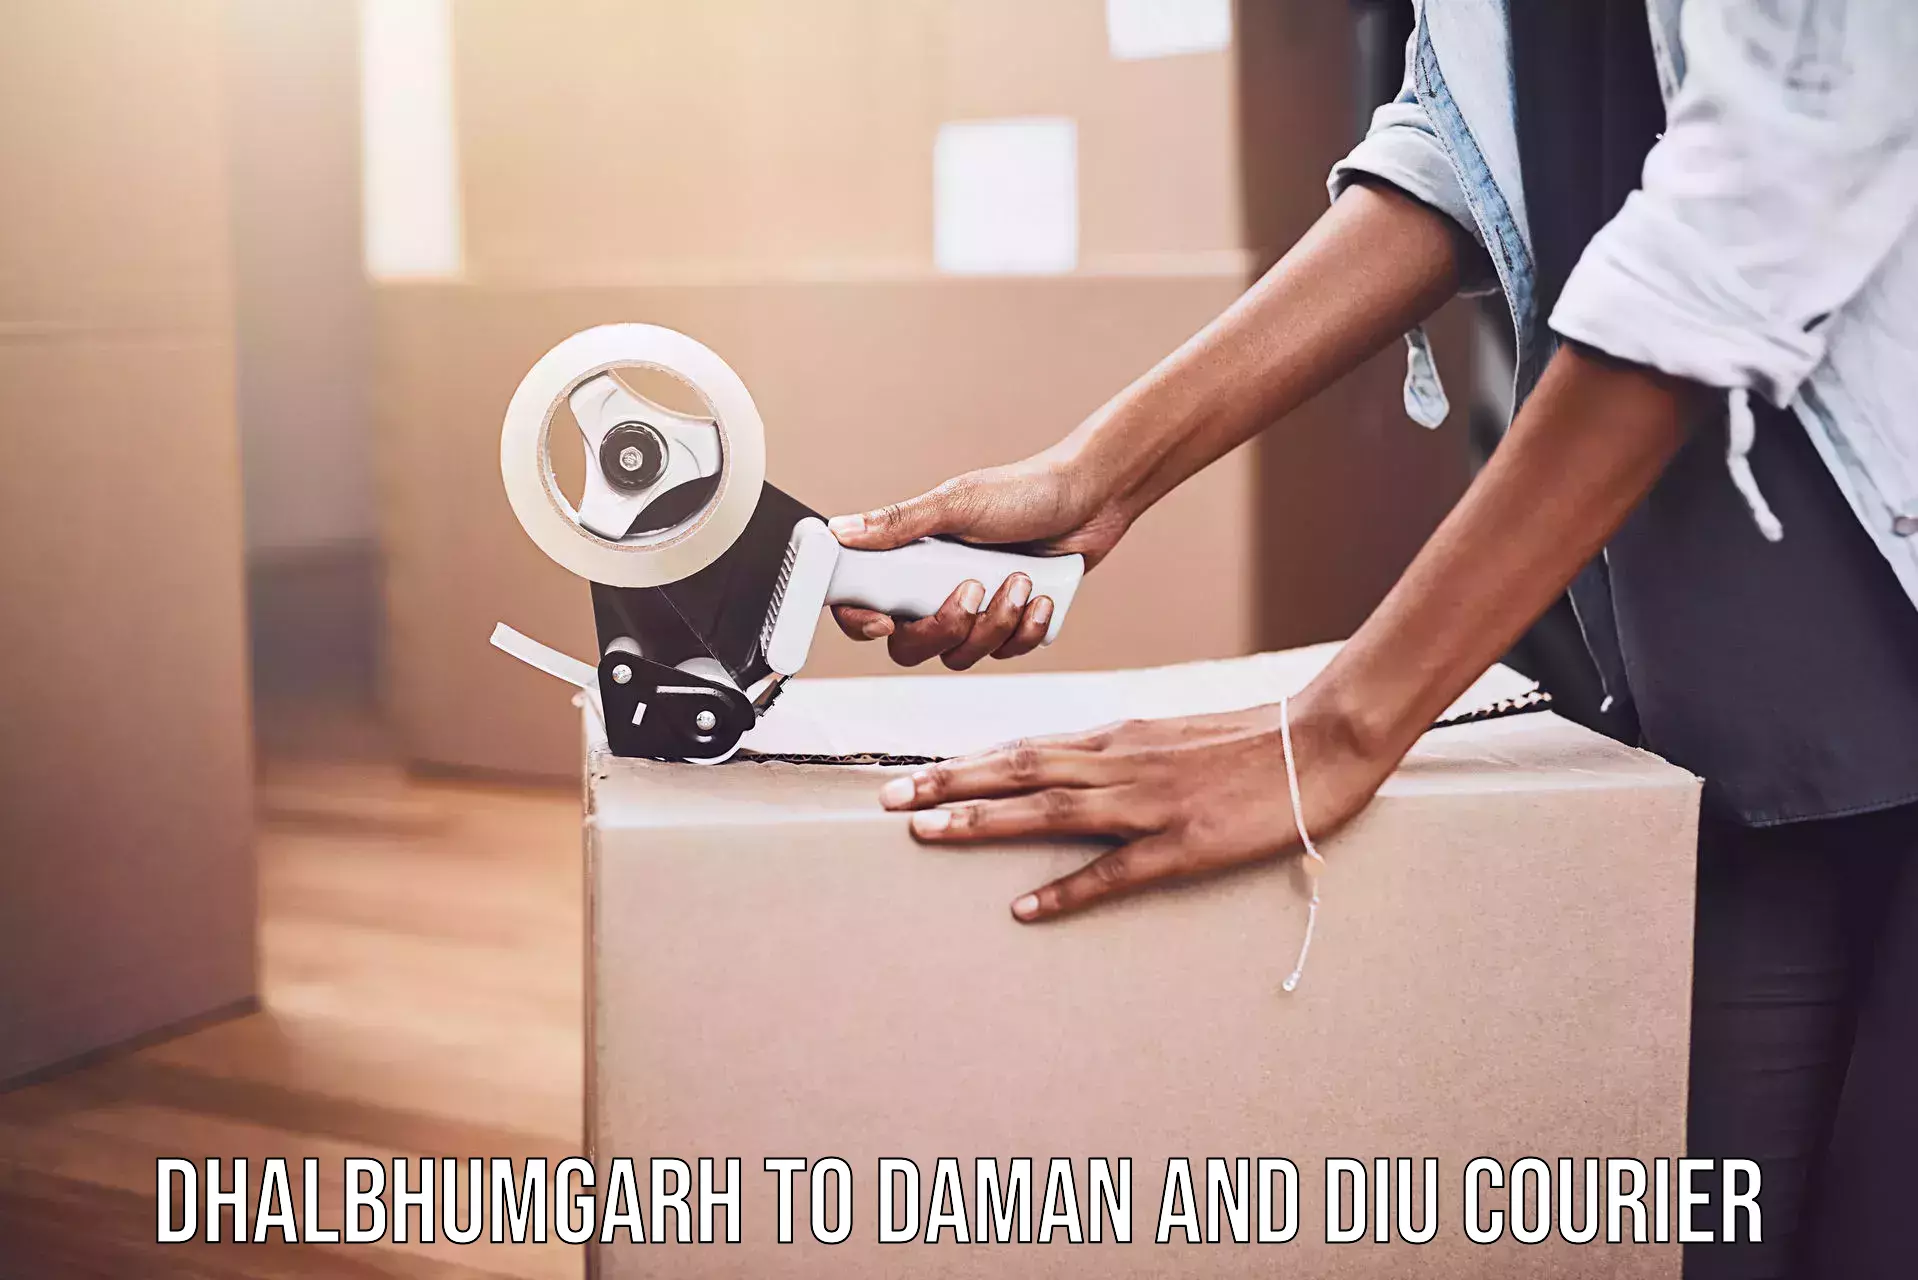 Express package handling Dhalbhumgarh to Diu